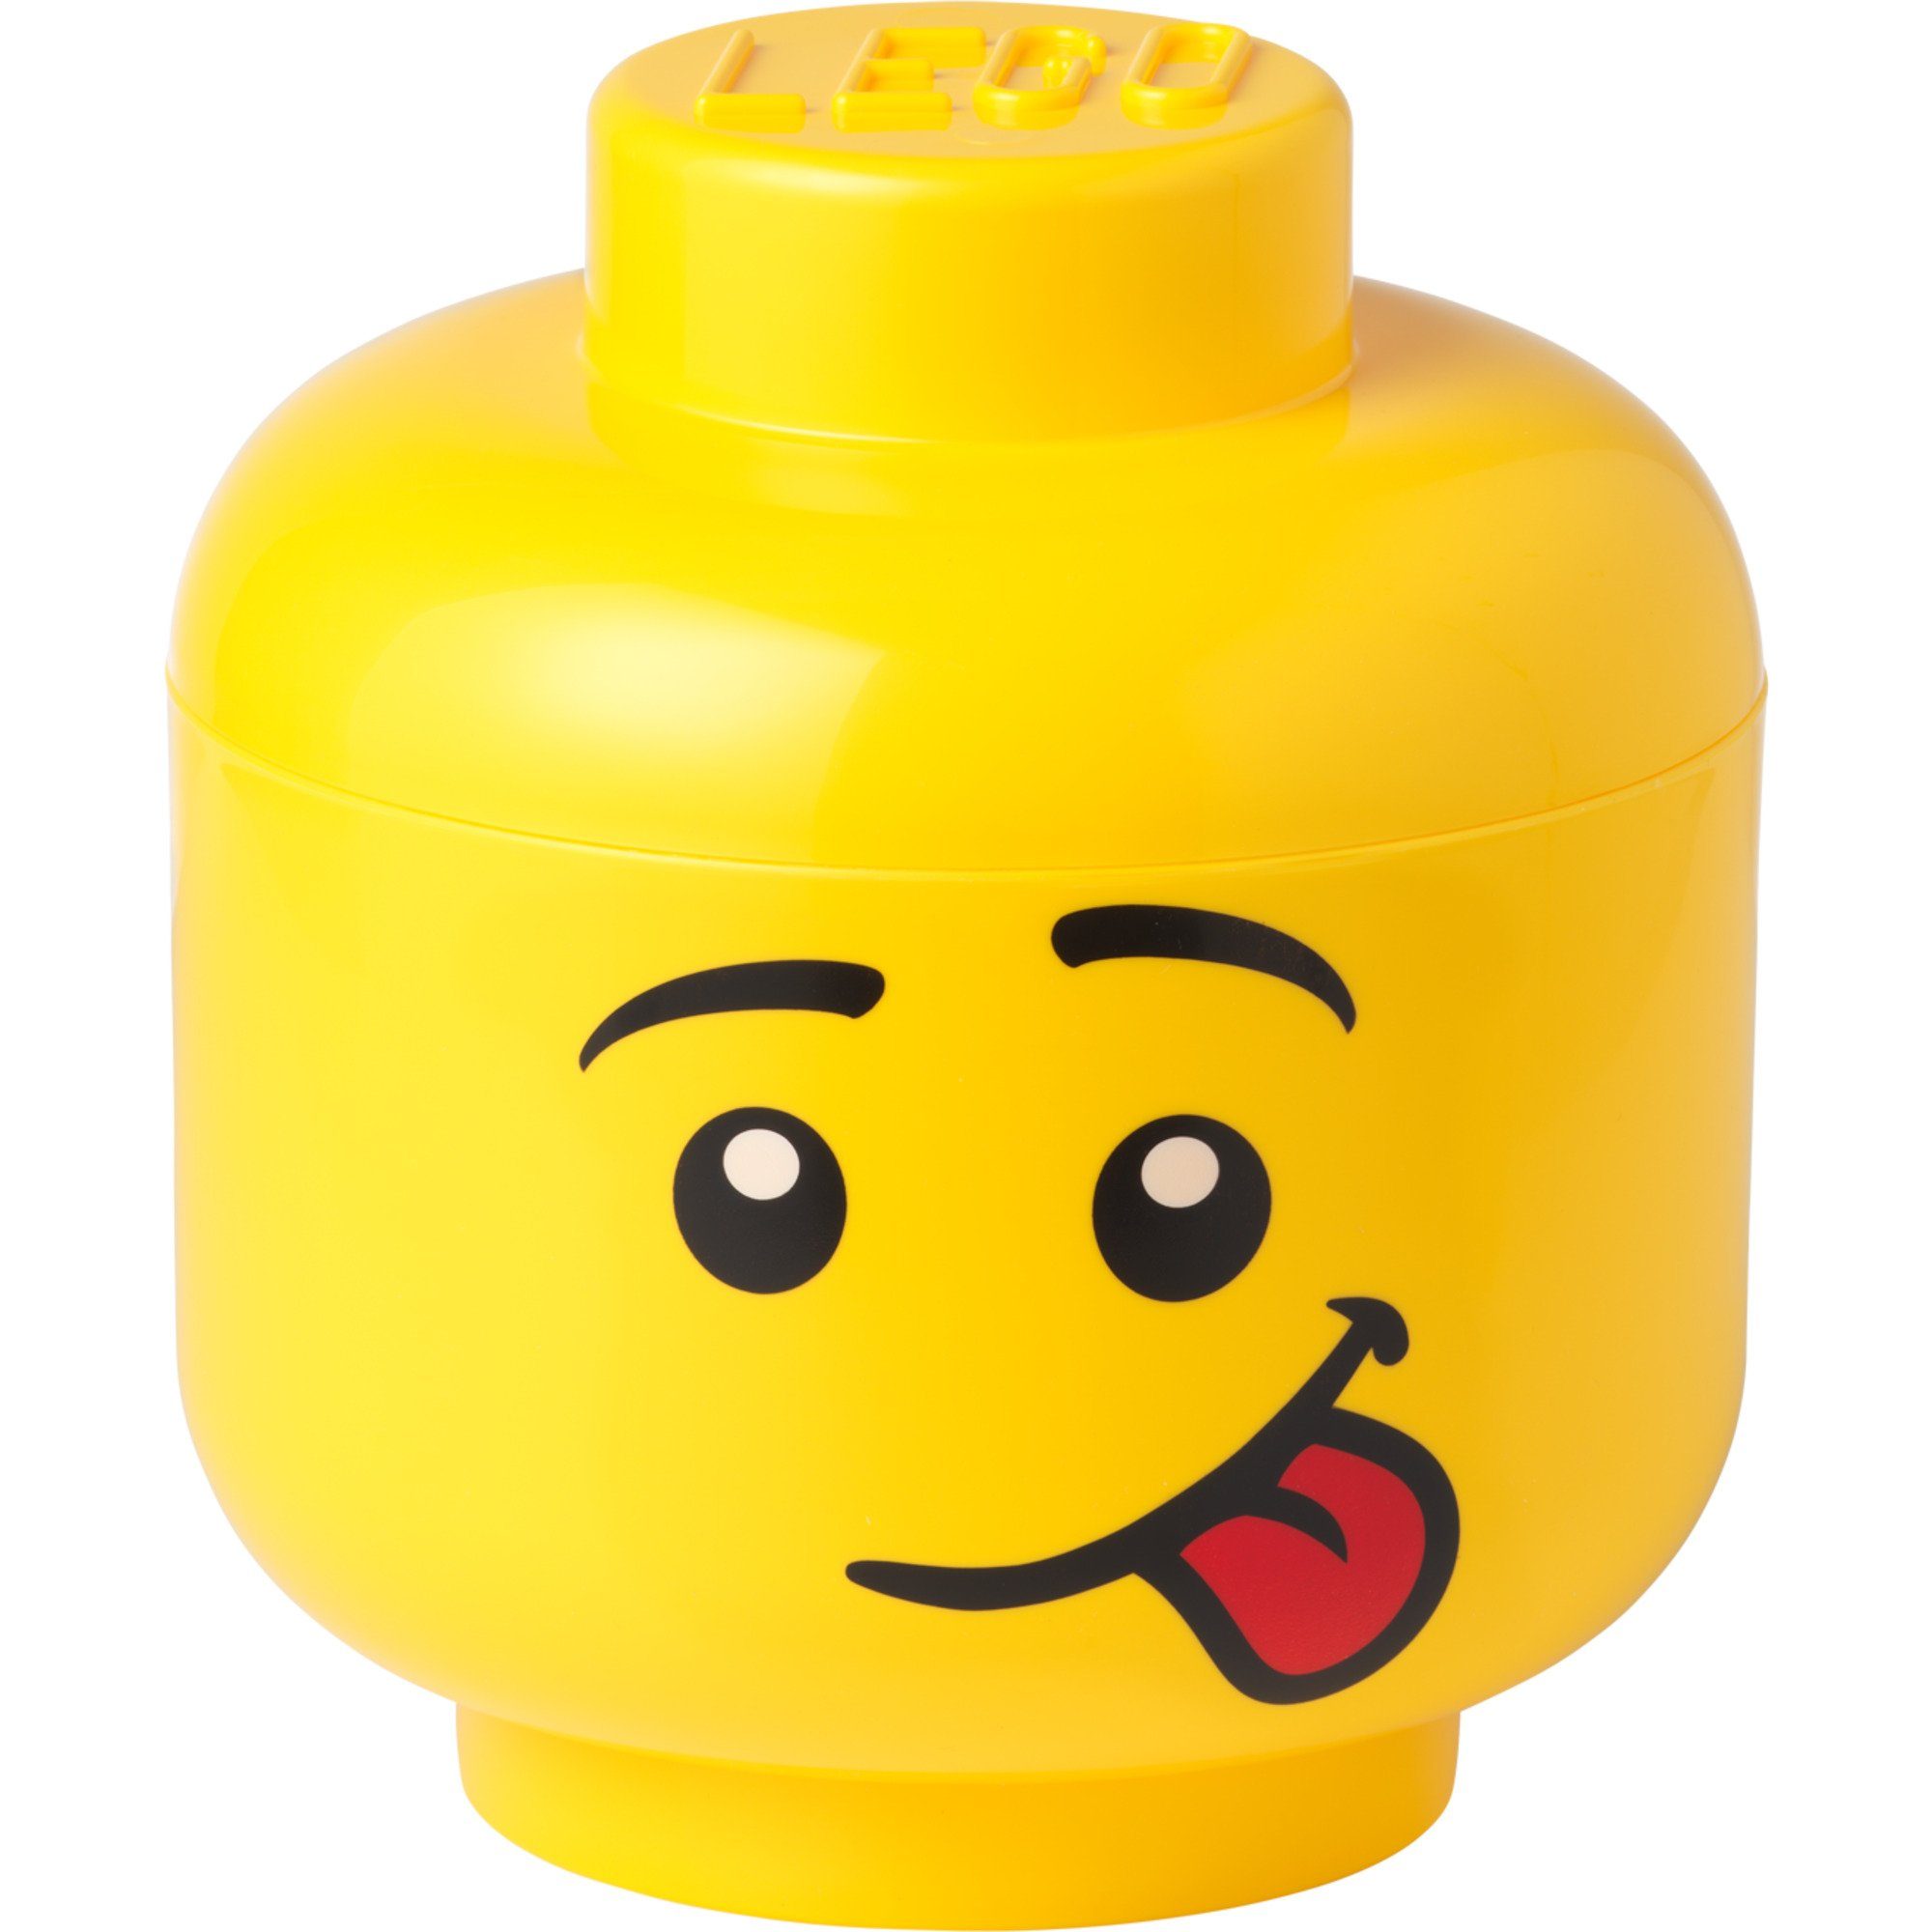 Room Copenhagen Aufbewahrungsbox LEGO Storage Head "Silly", groß